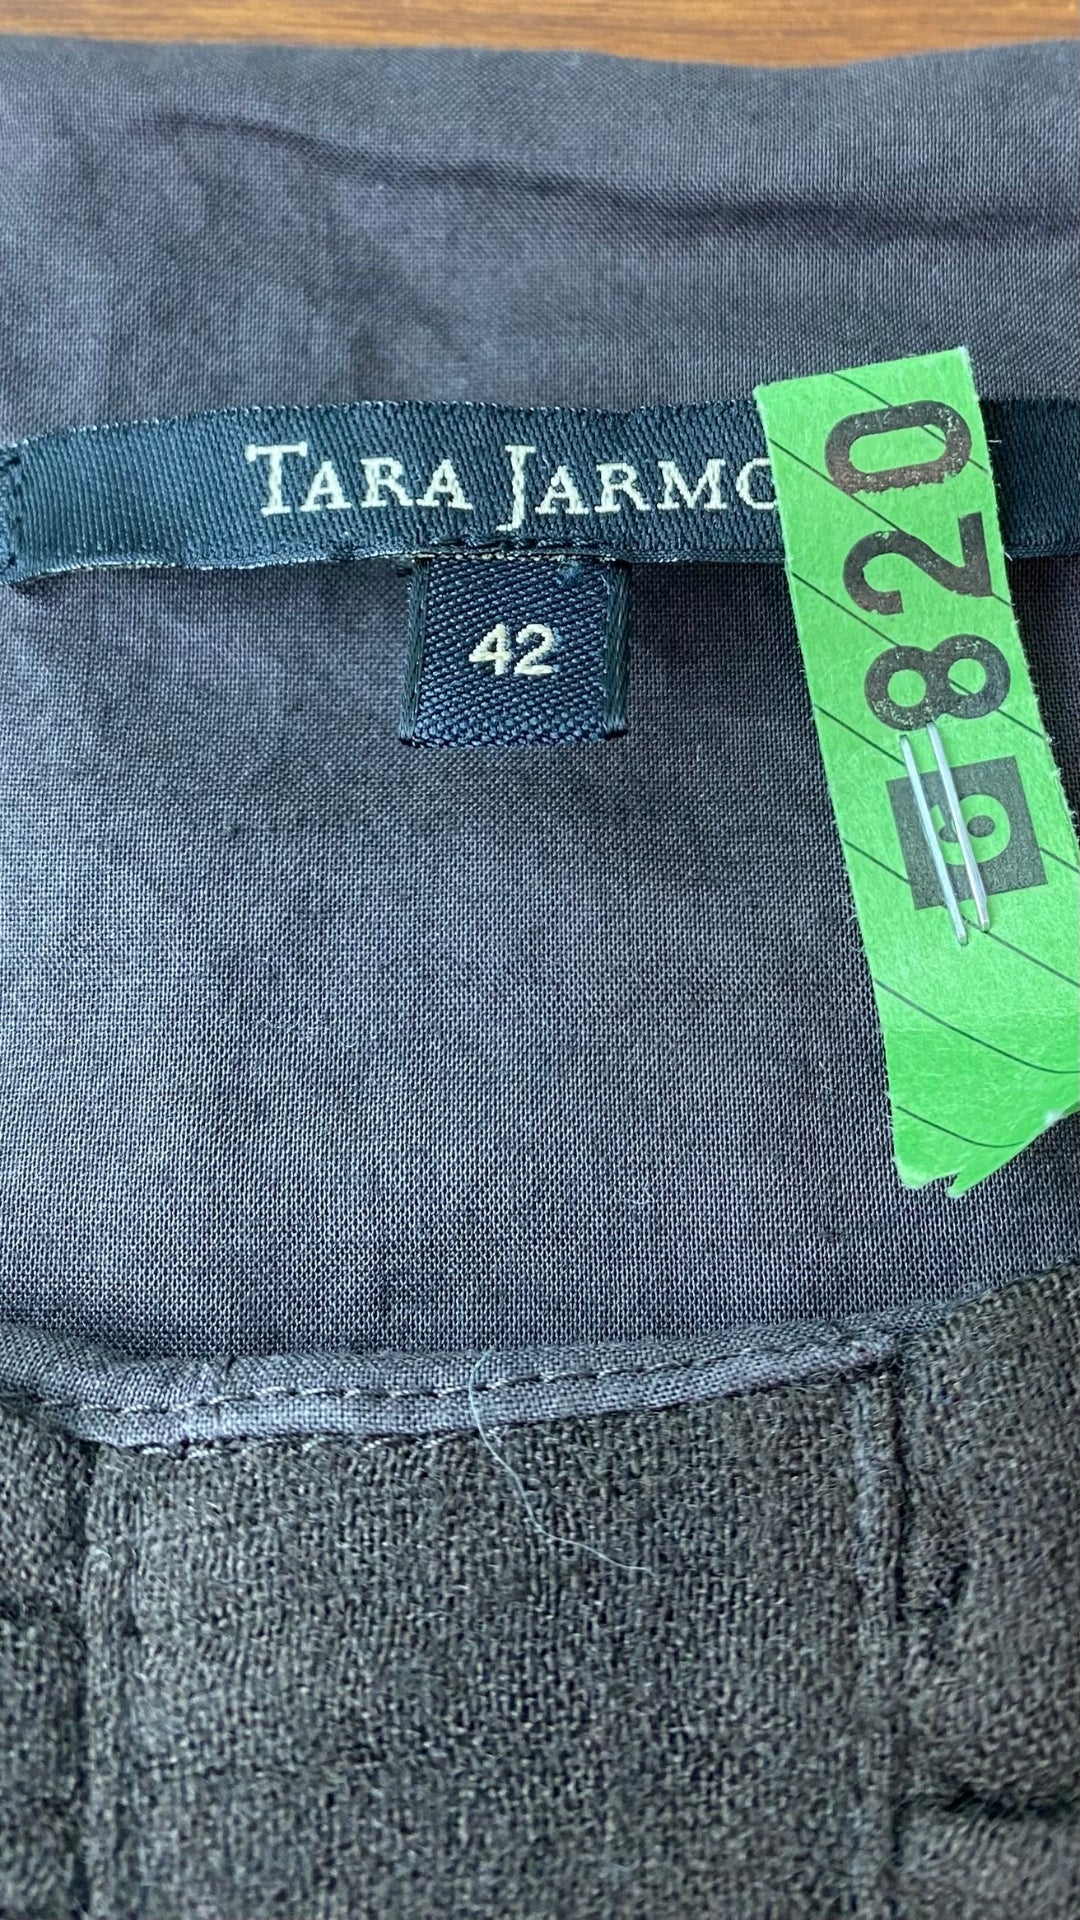 Robe espresso en laine à manche ballon Tara Jarmon, taille 42 (m/l). Vue de l'étiquette de marque et taille.